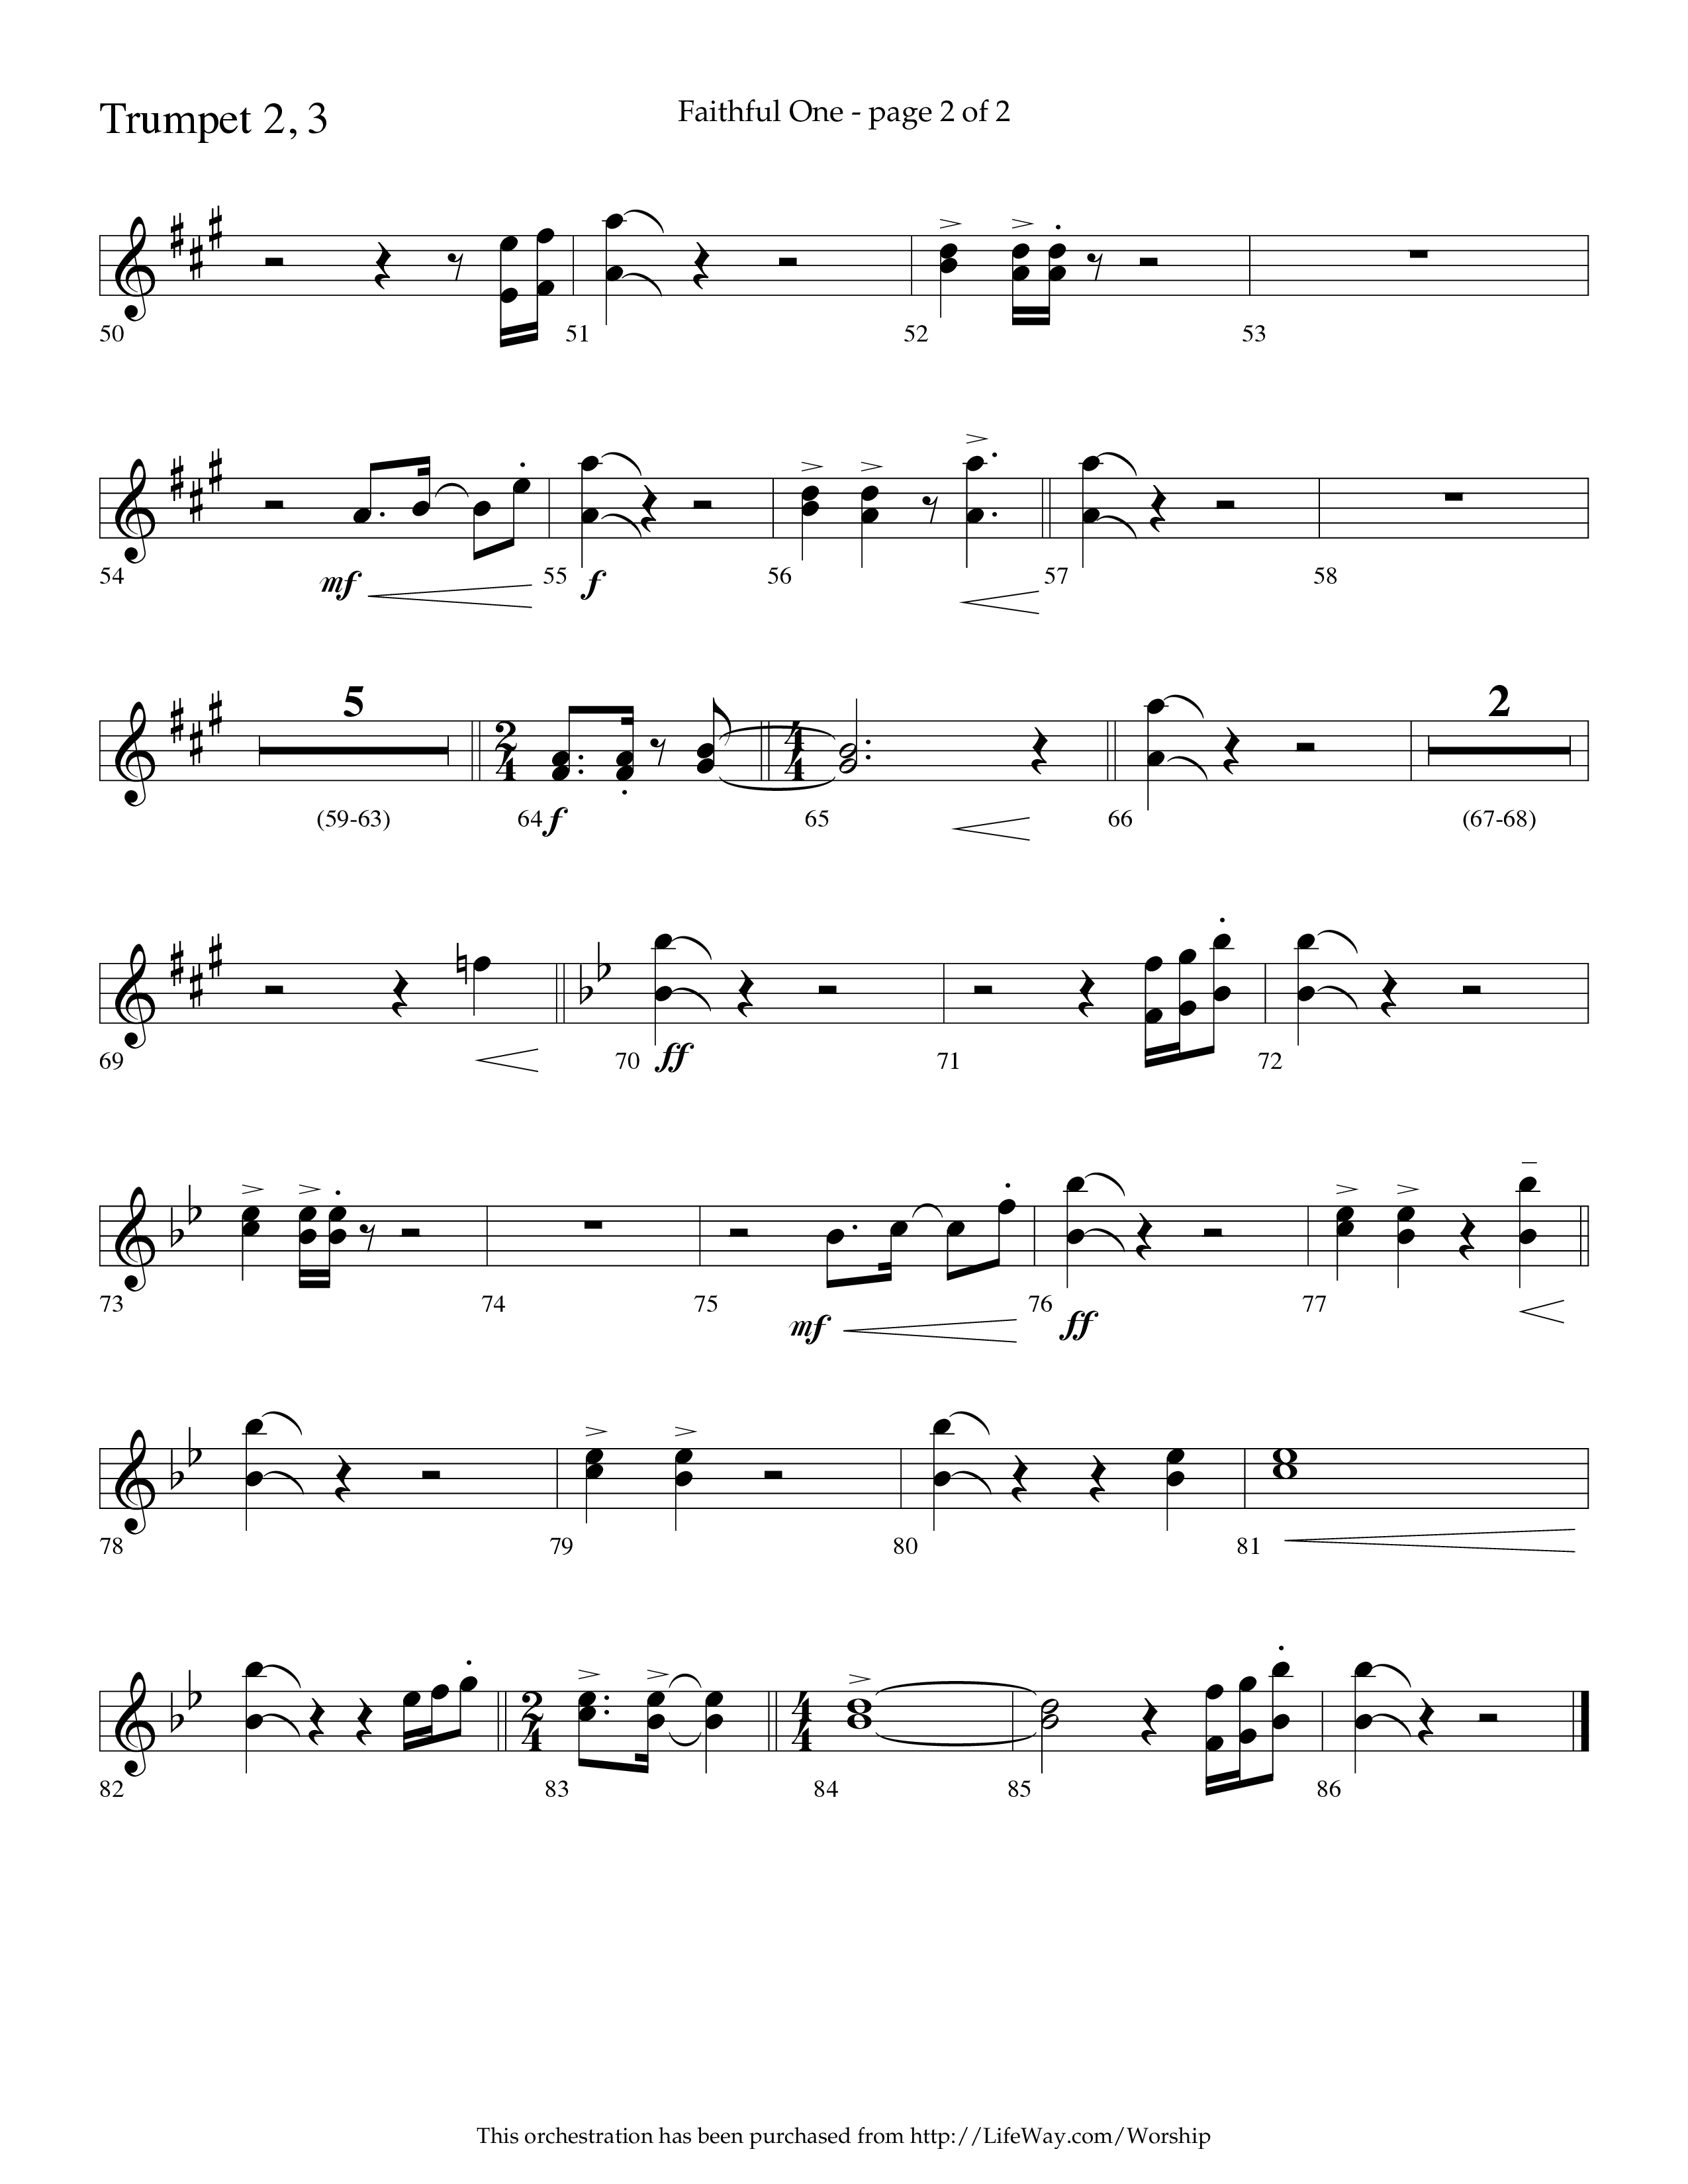 Faithful One (Choral Anthem SATB) Trumpet 2/3 (Lifeway Choral / Arr. Cliff Duren)